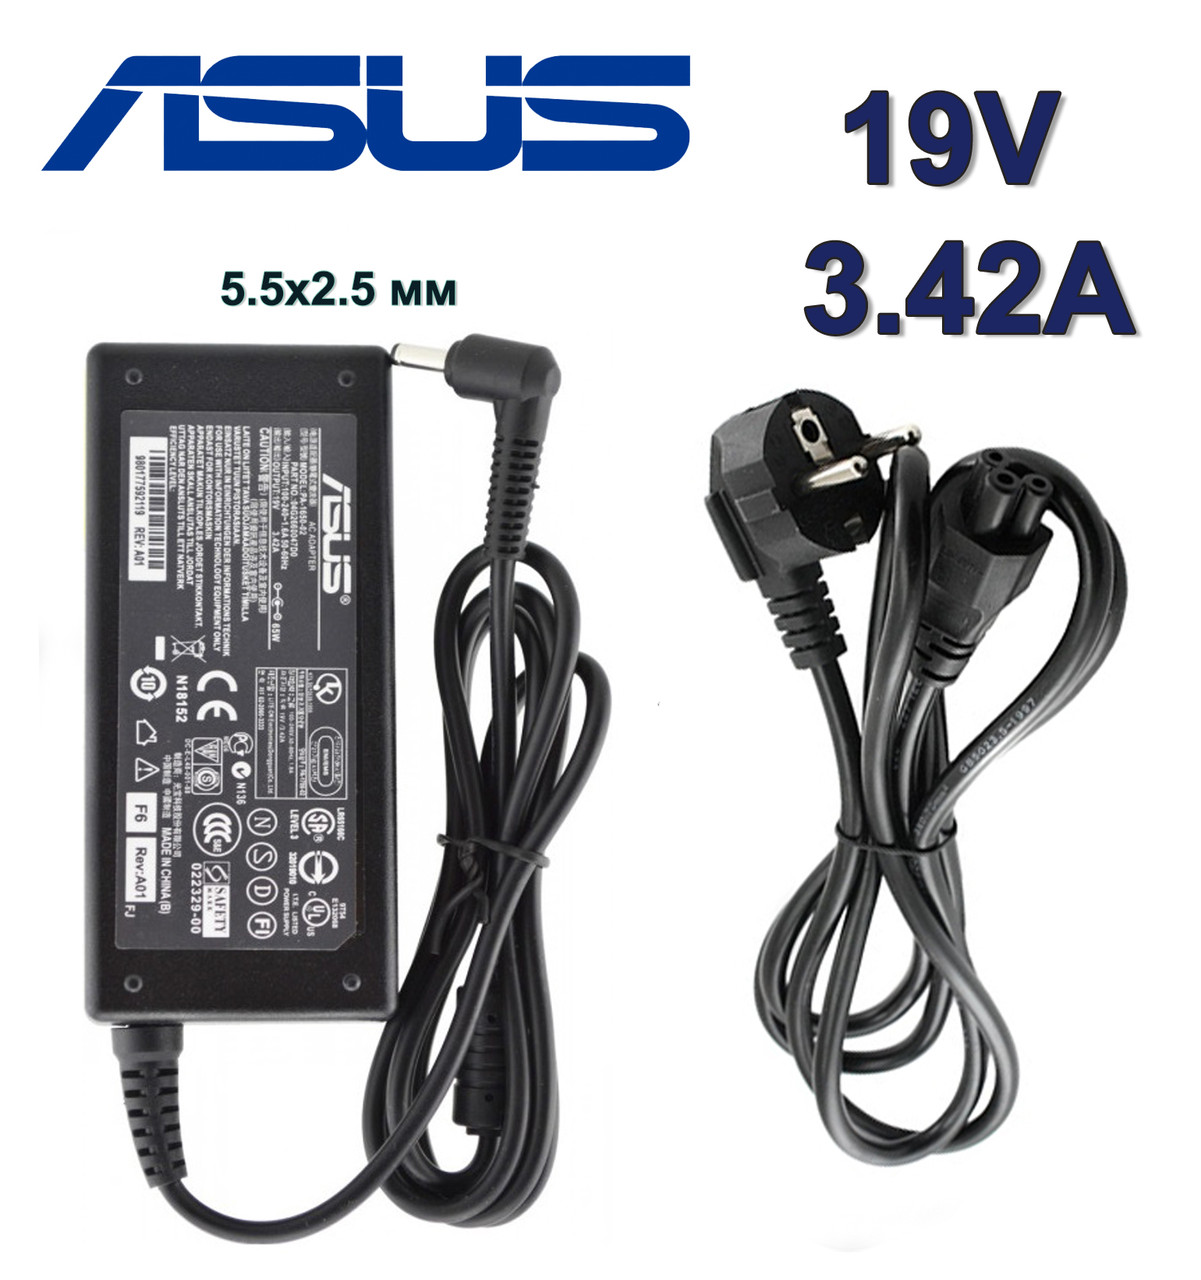 Зарядний пристрій для ноутбука Asus X751N 19V 3.42 A 65W штекер 5.5х2.5 мм (ADP-45BW B) зарядка, адаптер, блок живлення